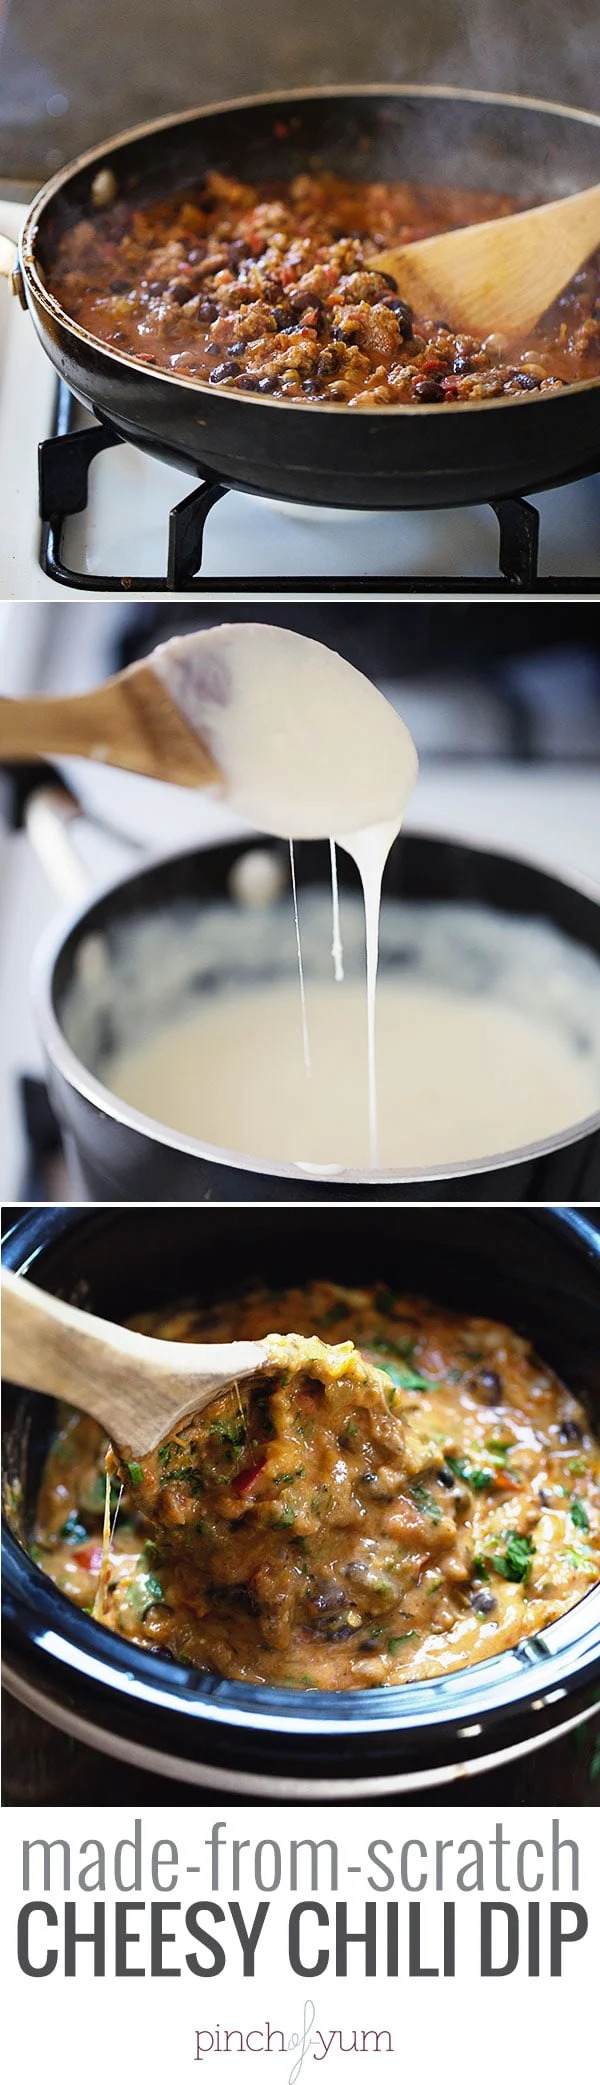 cách làm nước sốt cheesy chili dip